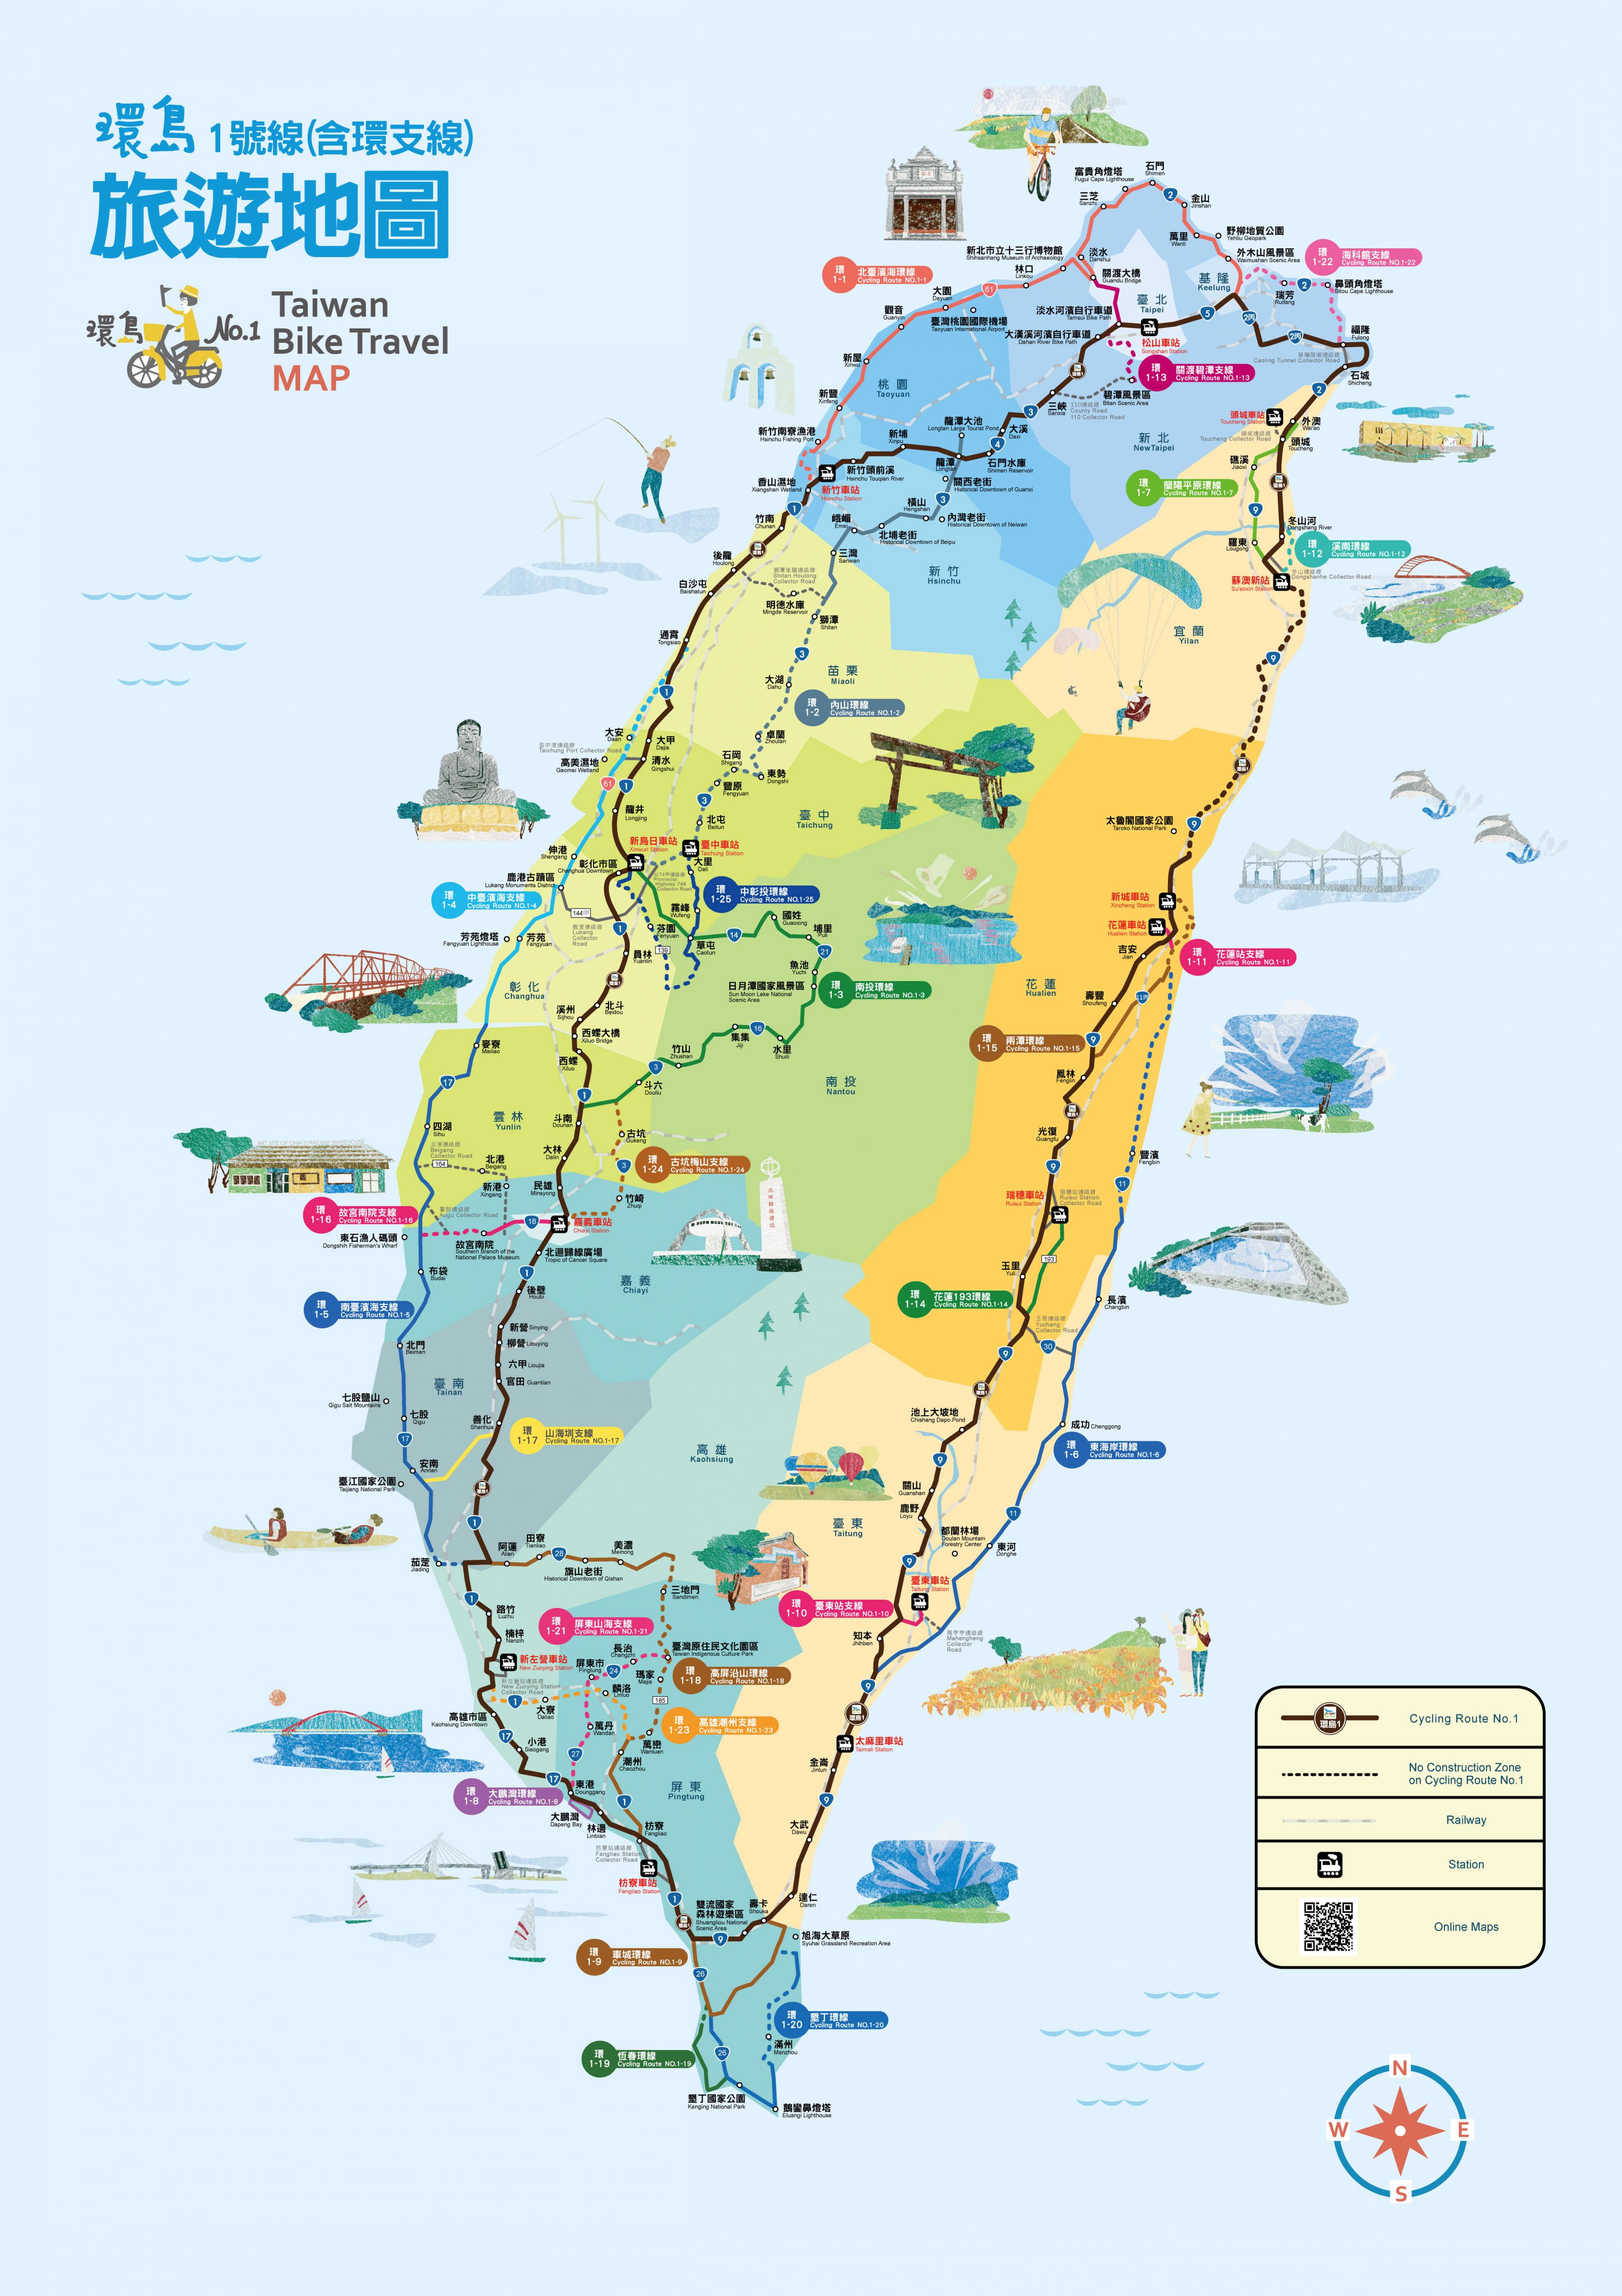 Với bản đồ Đài Loan phóng to, bạn có thể chi tiết hóa những địa điểm quan trọng và thuận tiện cho việc lên lịch trình du lịch của mình. Hãy cùng tìm hiểu và khám phá vẻ đẹp của Đài Loan thông qua bản đồ phóng to này.